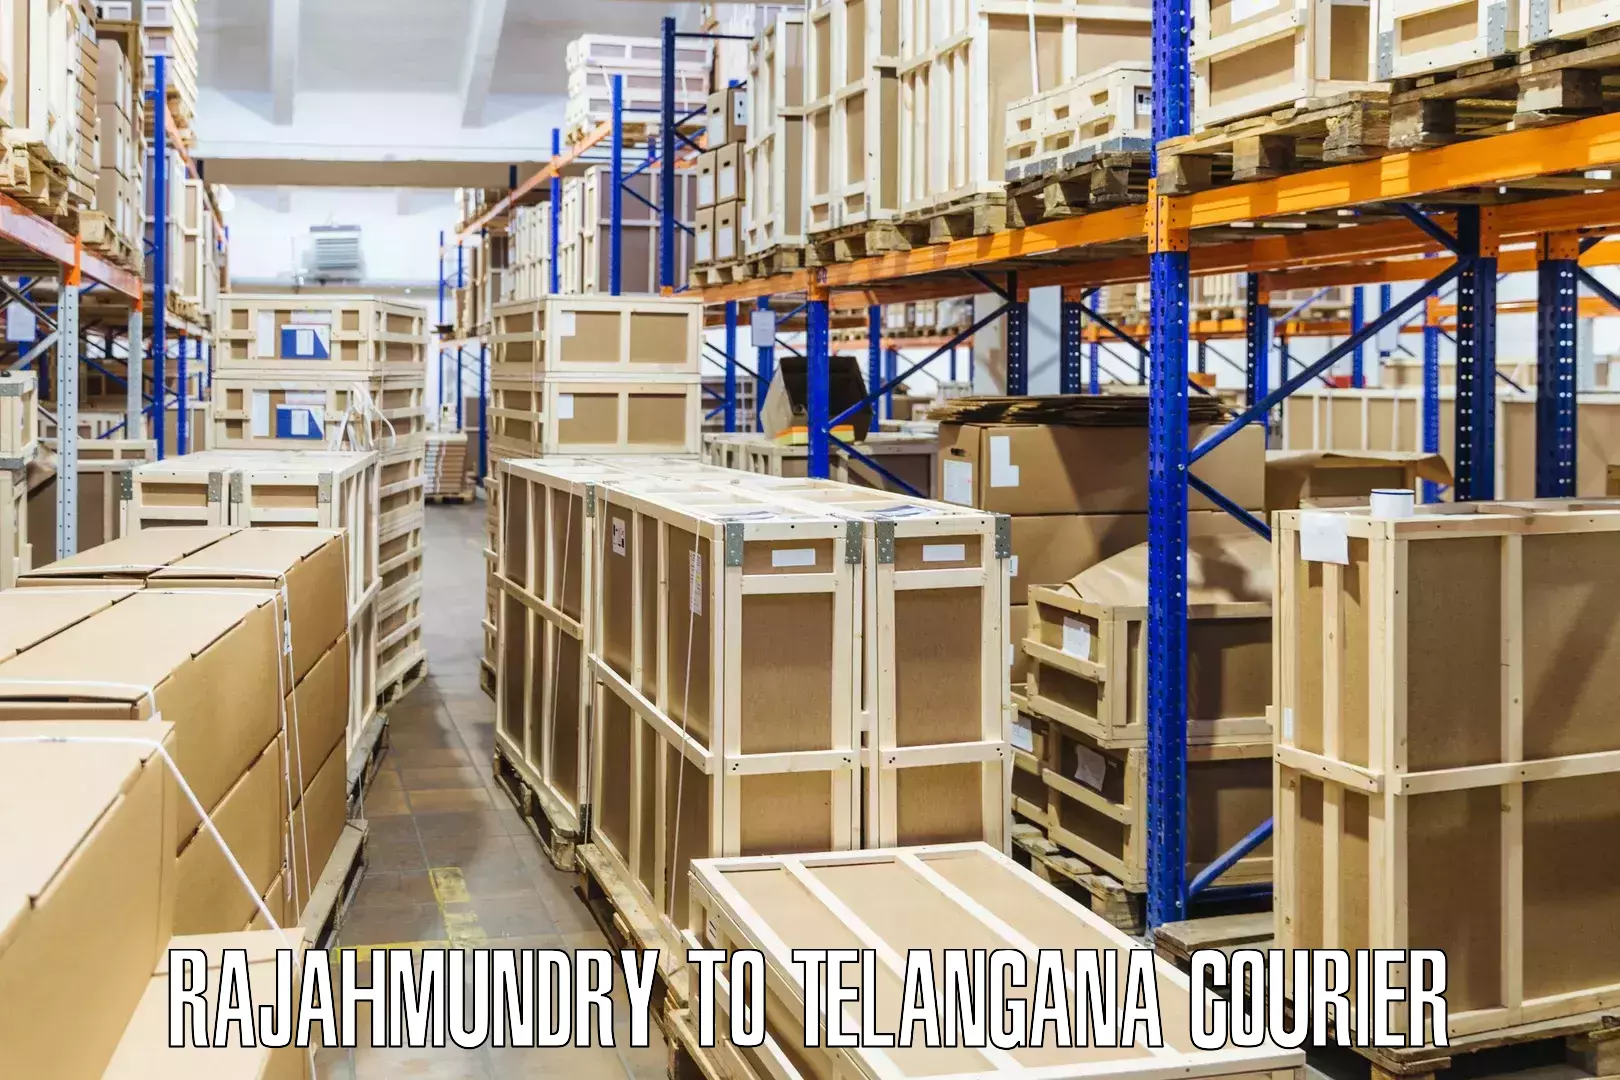 Global logistics network Rajahmundry to Adilabad